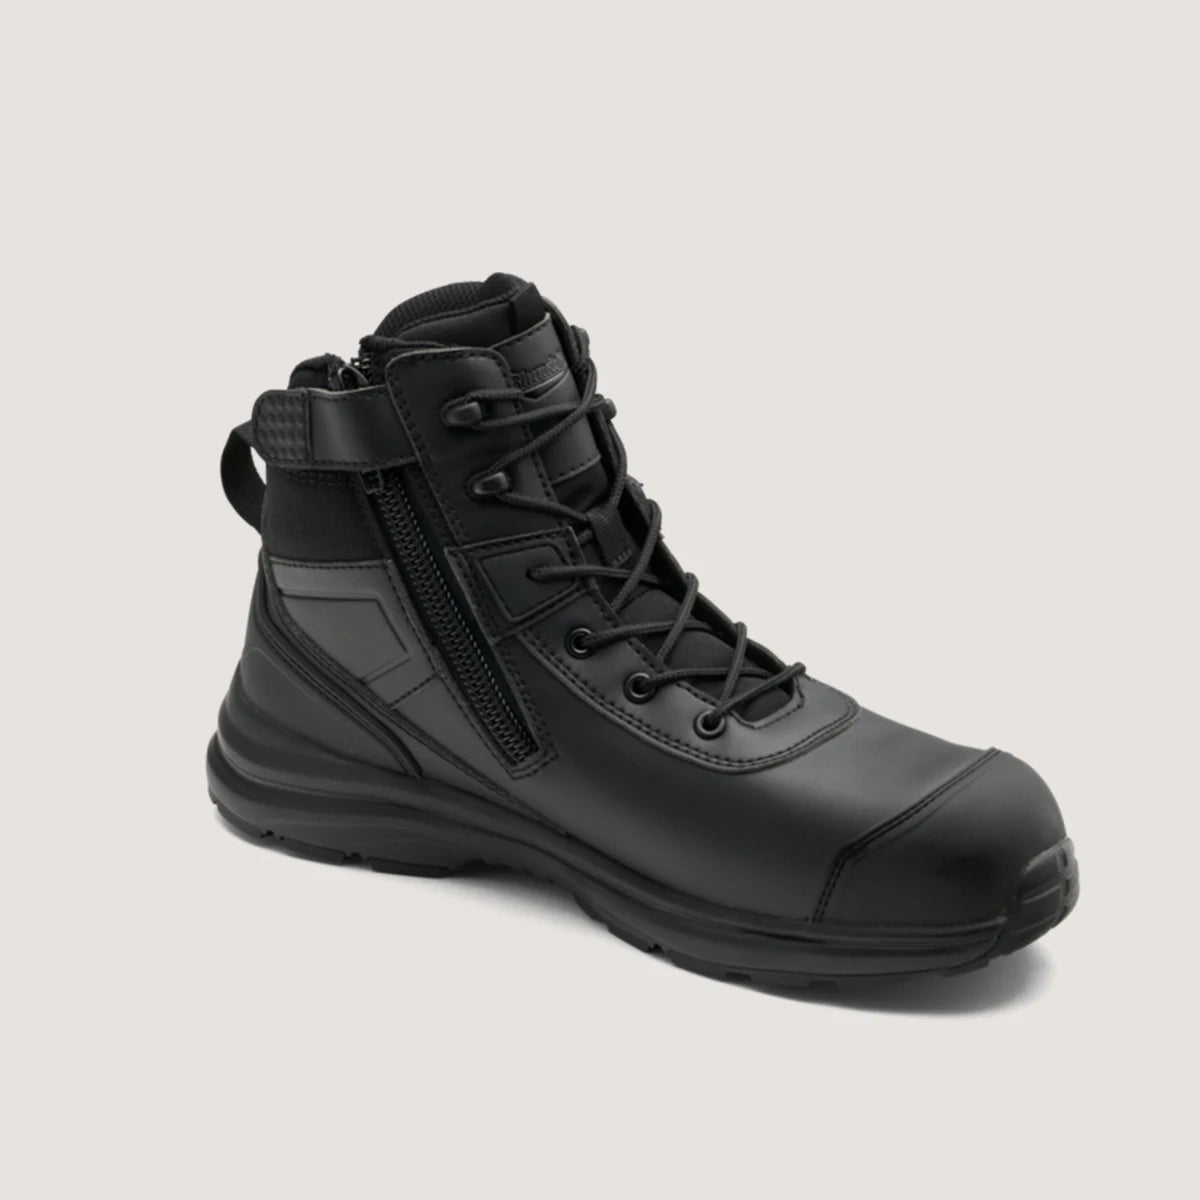 Blundstone 797 Lightweight Hiker Safety Boot-Black